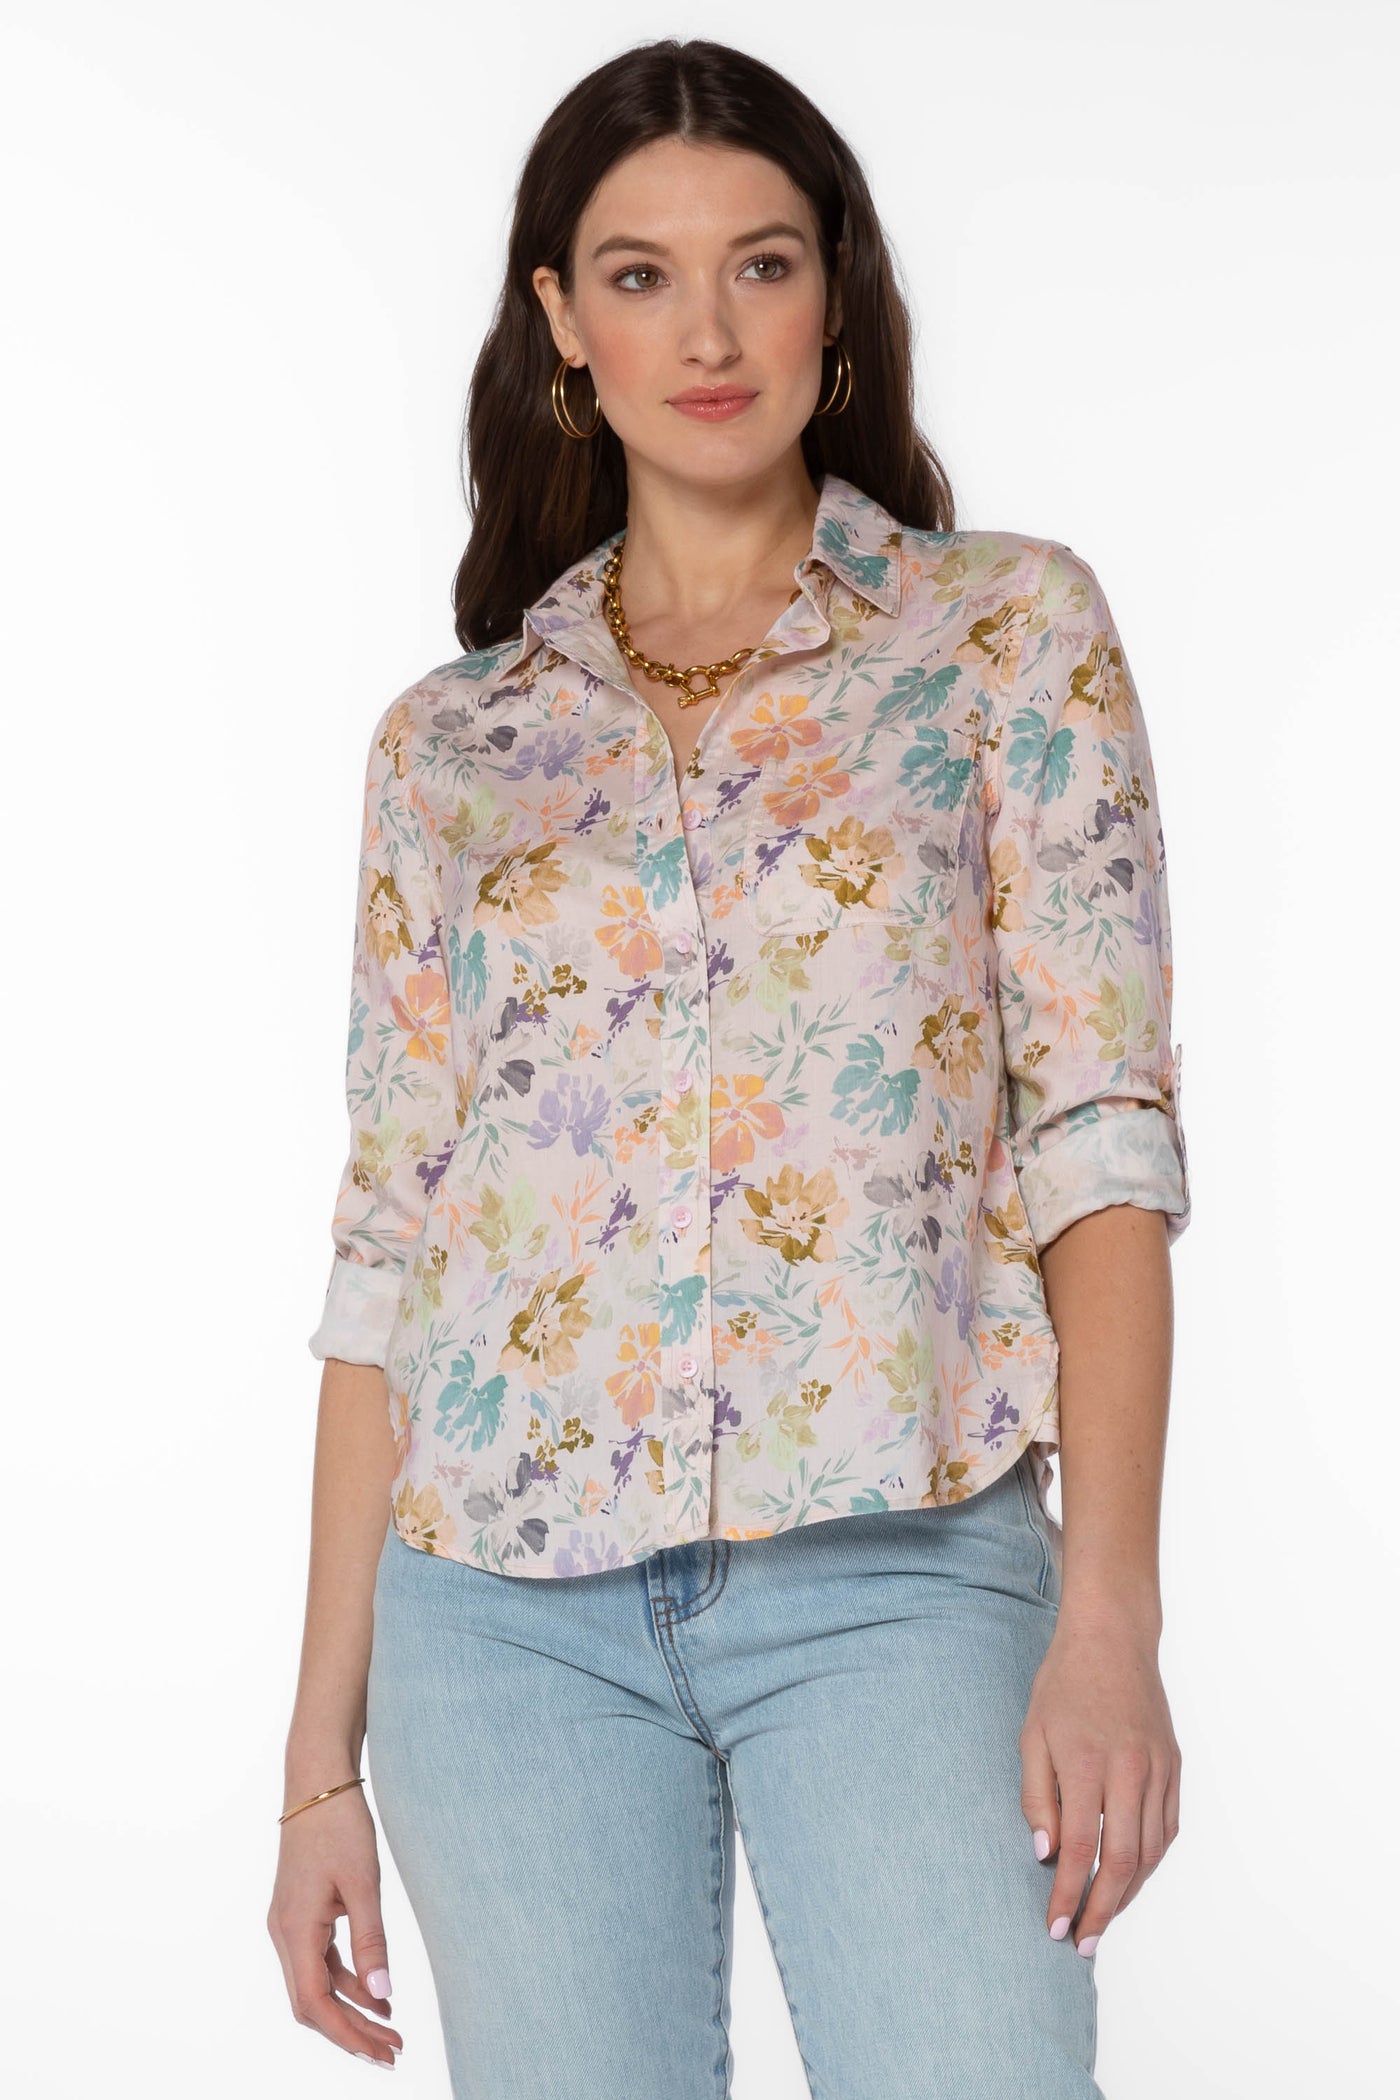 Elisa Pink Floral Shirt - Tops - Velvet Heart Clothing